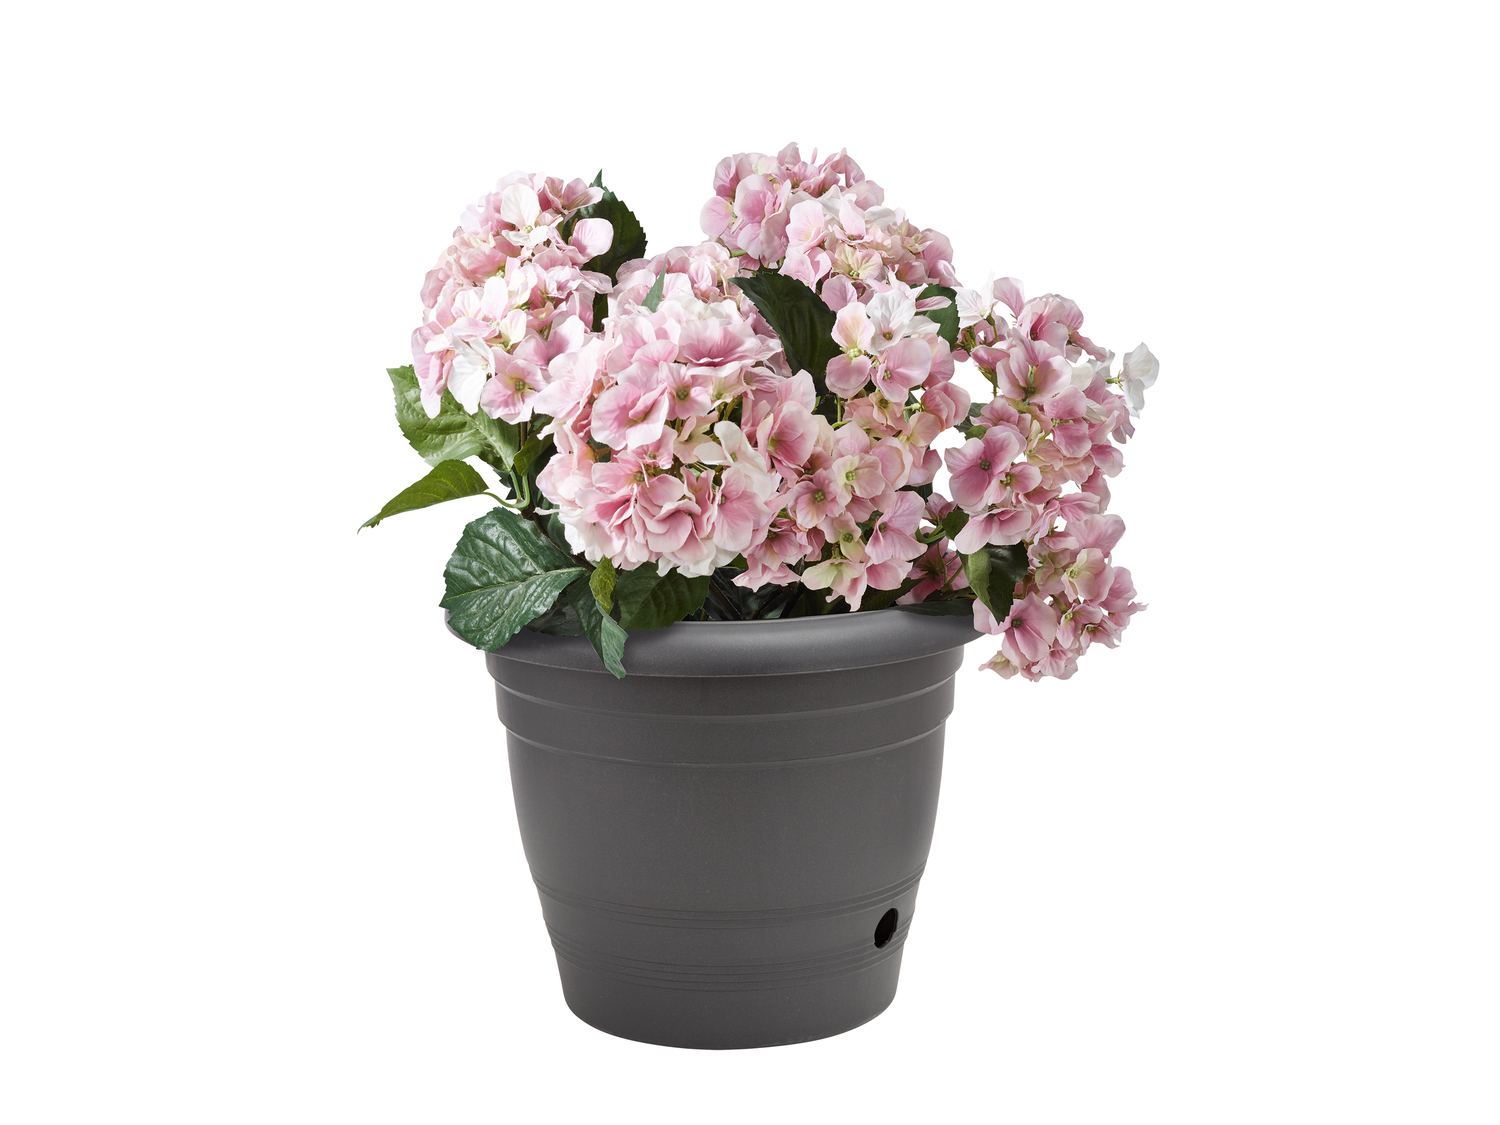 Vaso per fiori Parkside, prezzo 3.99 &#8364;  
Ø 40 cm
Caratteristiche